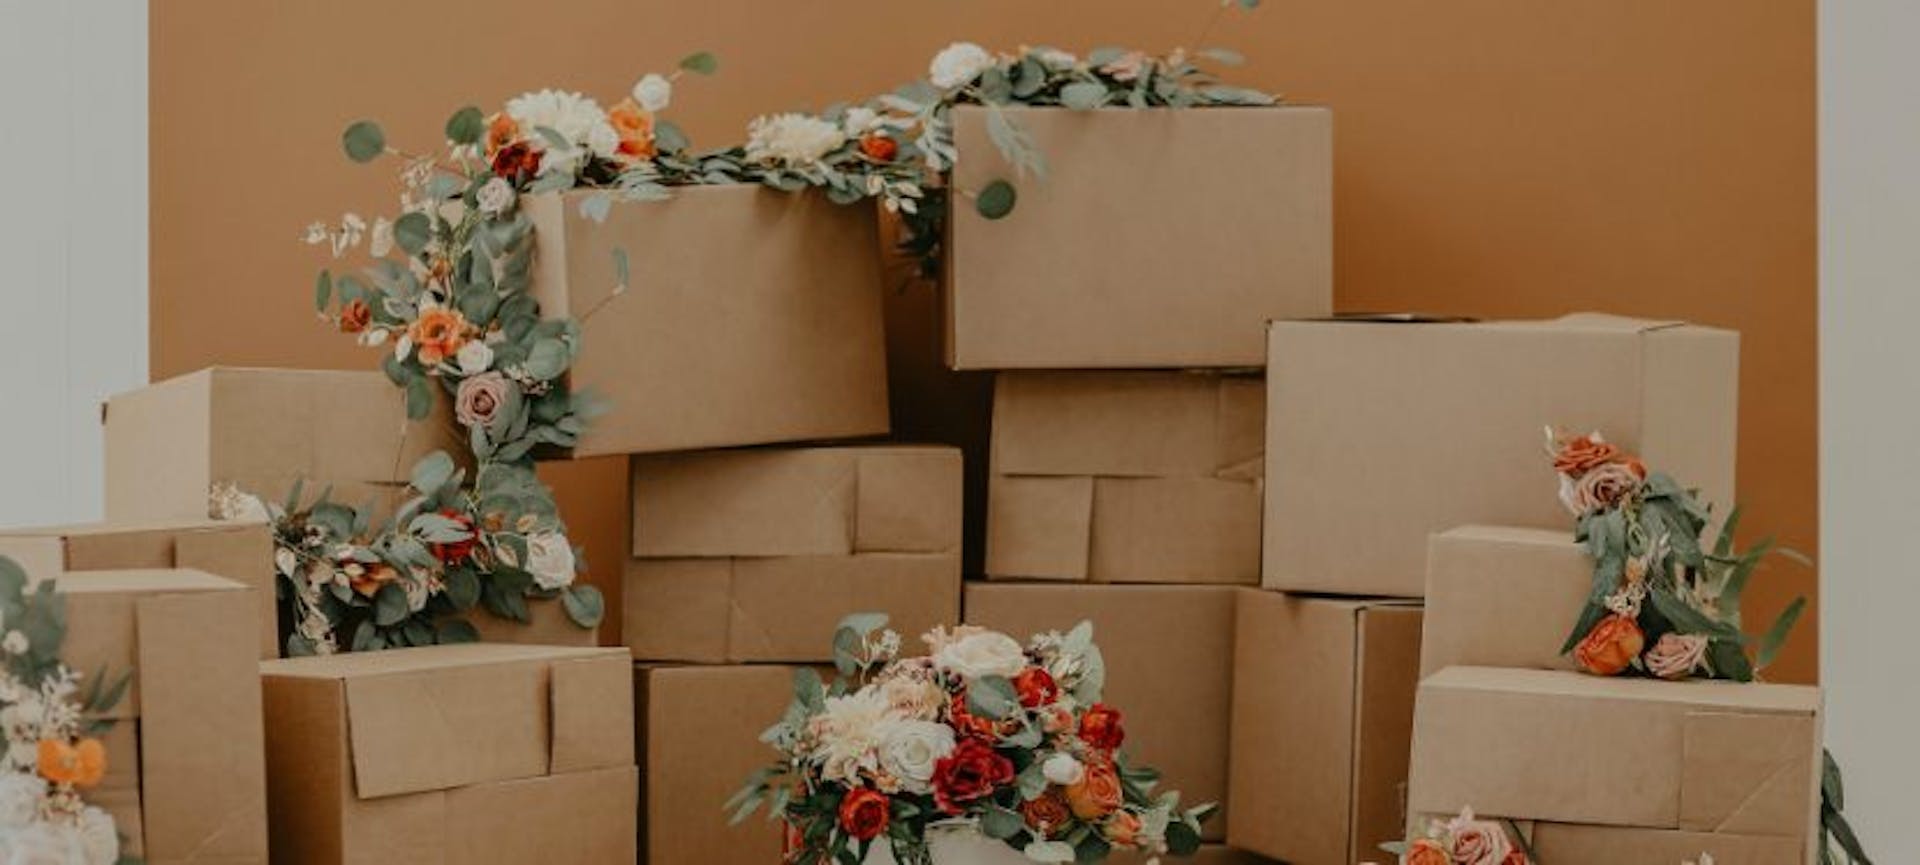 Cartons de déménagement gratuits provenant de chez un fleuriste